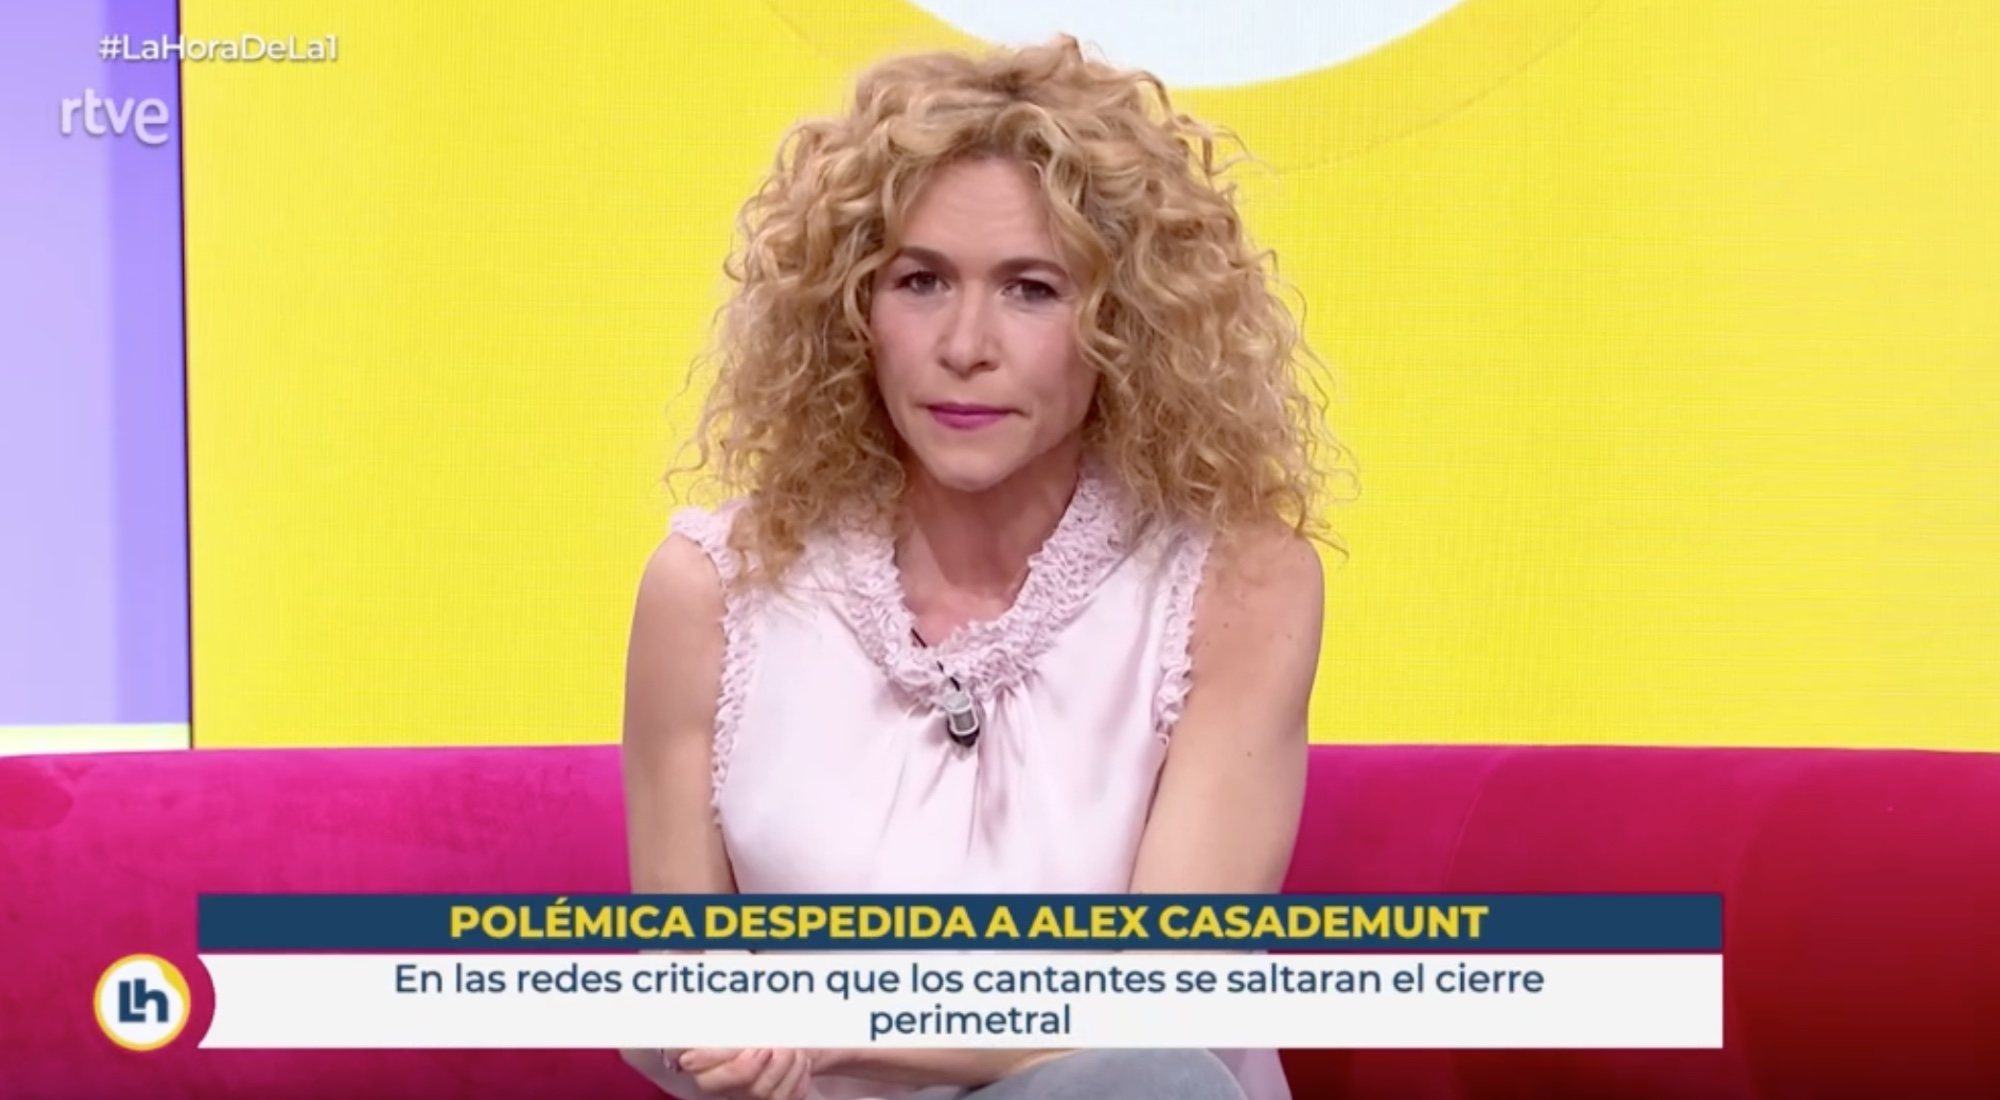 Cristina Fernández en 'La hora de La 1'